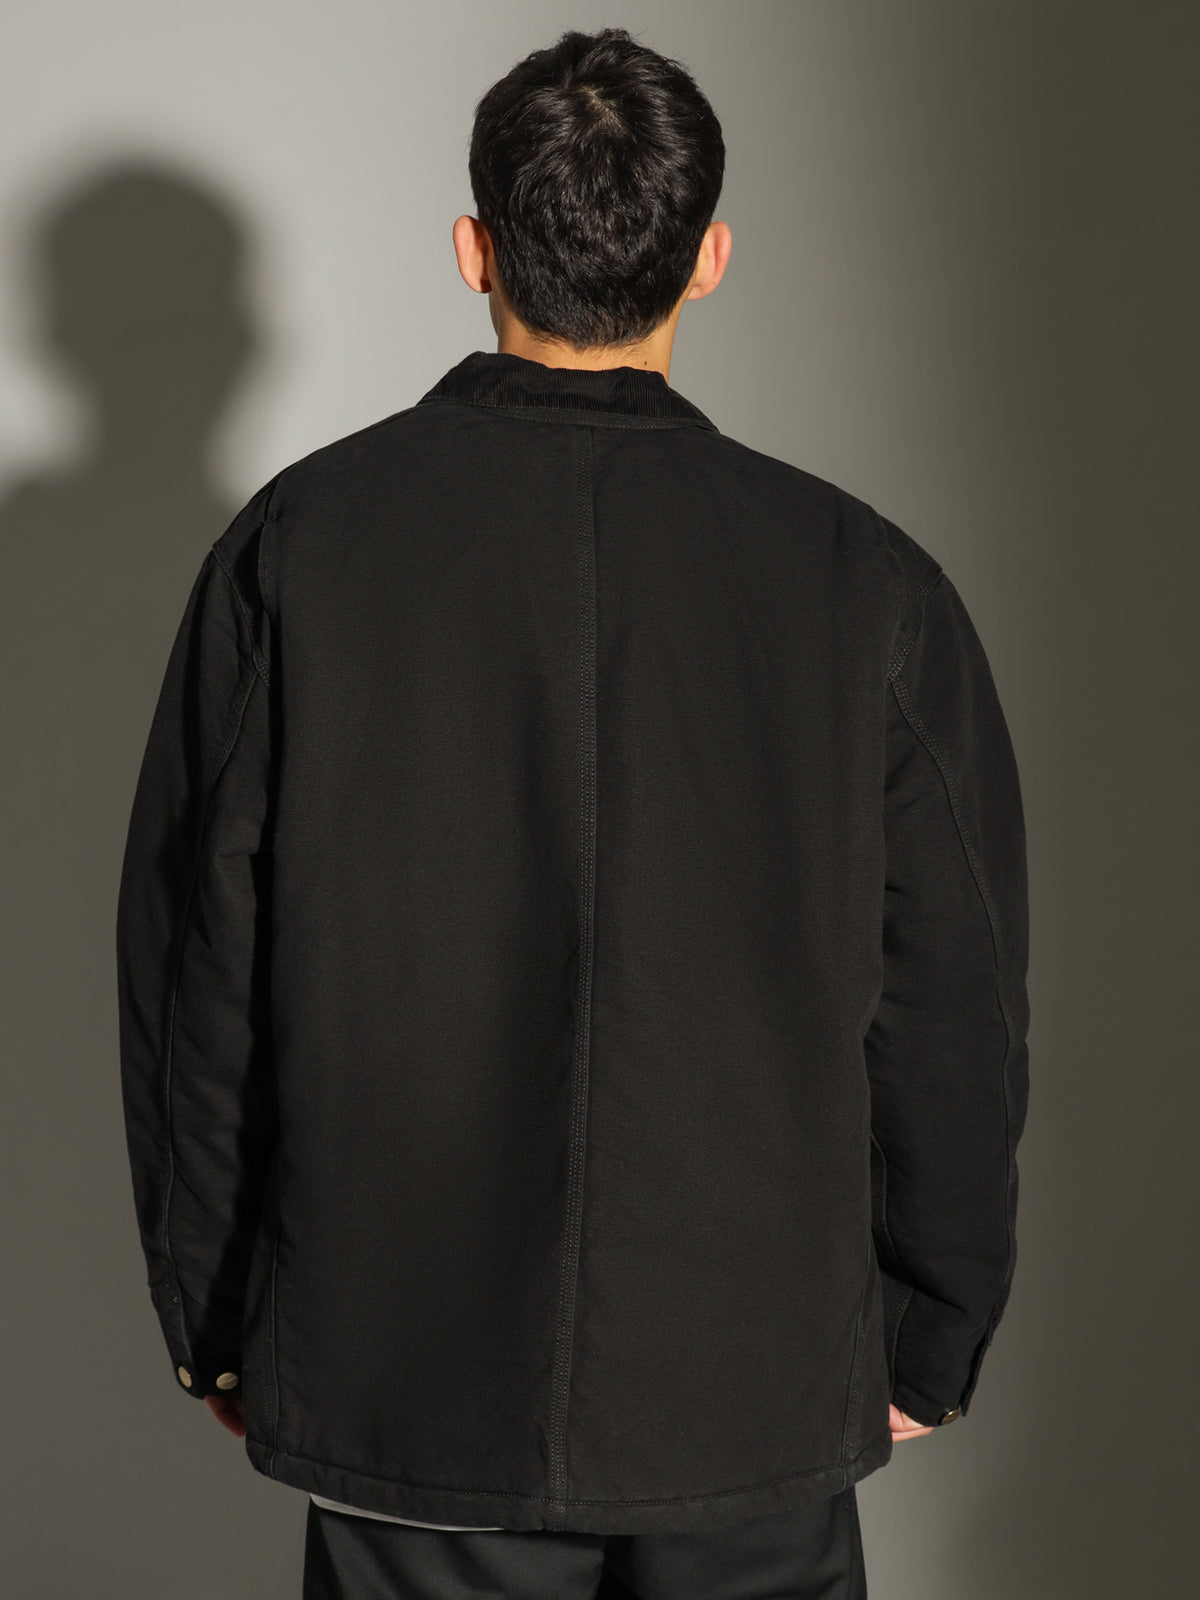 OG Chore Jacket in Black